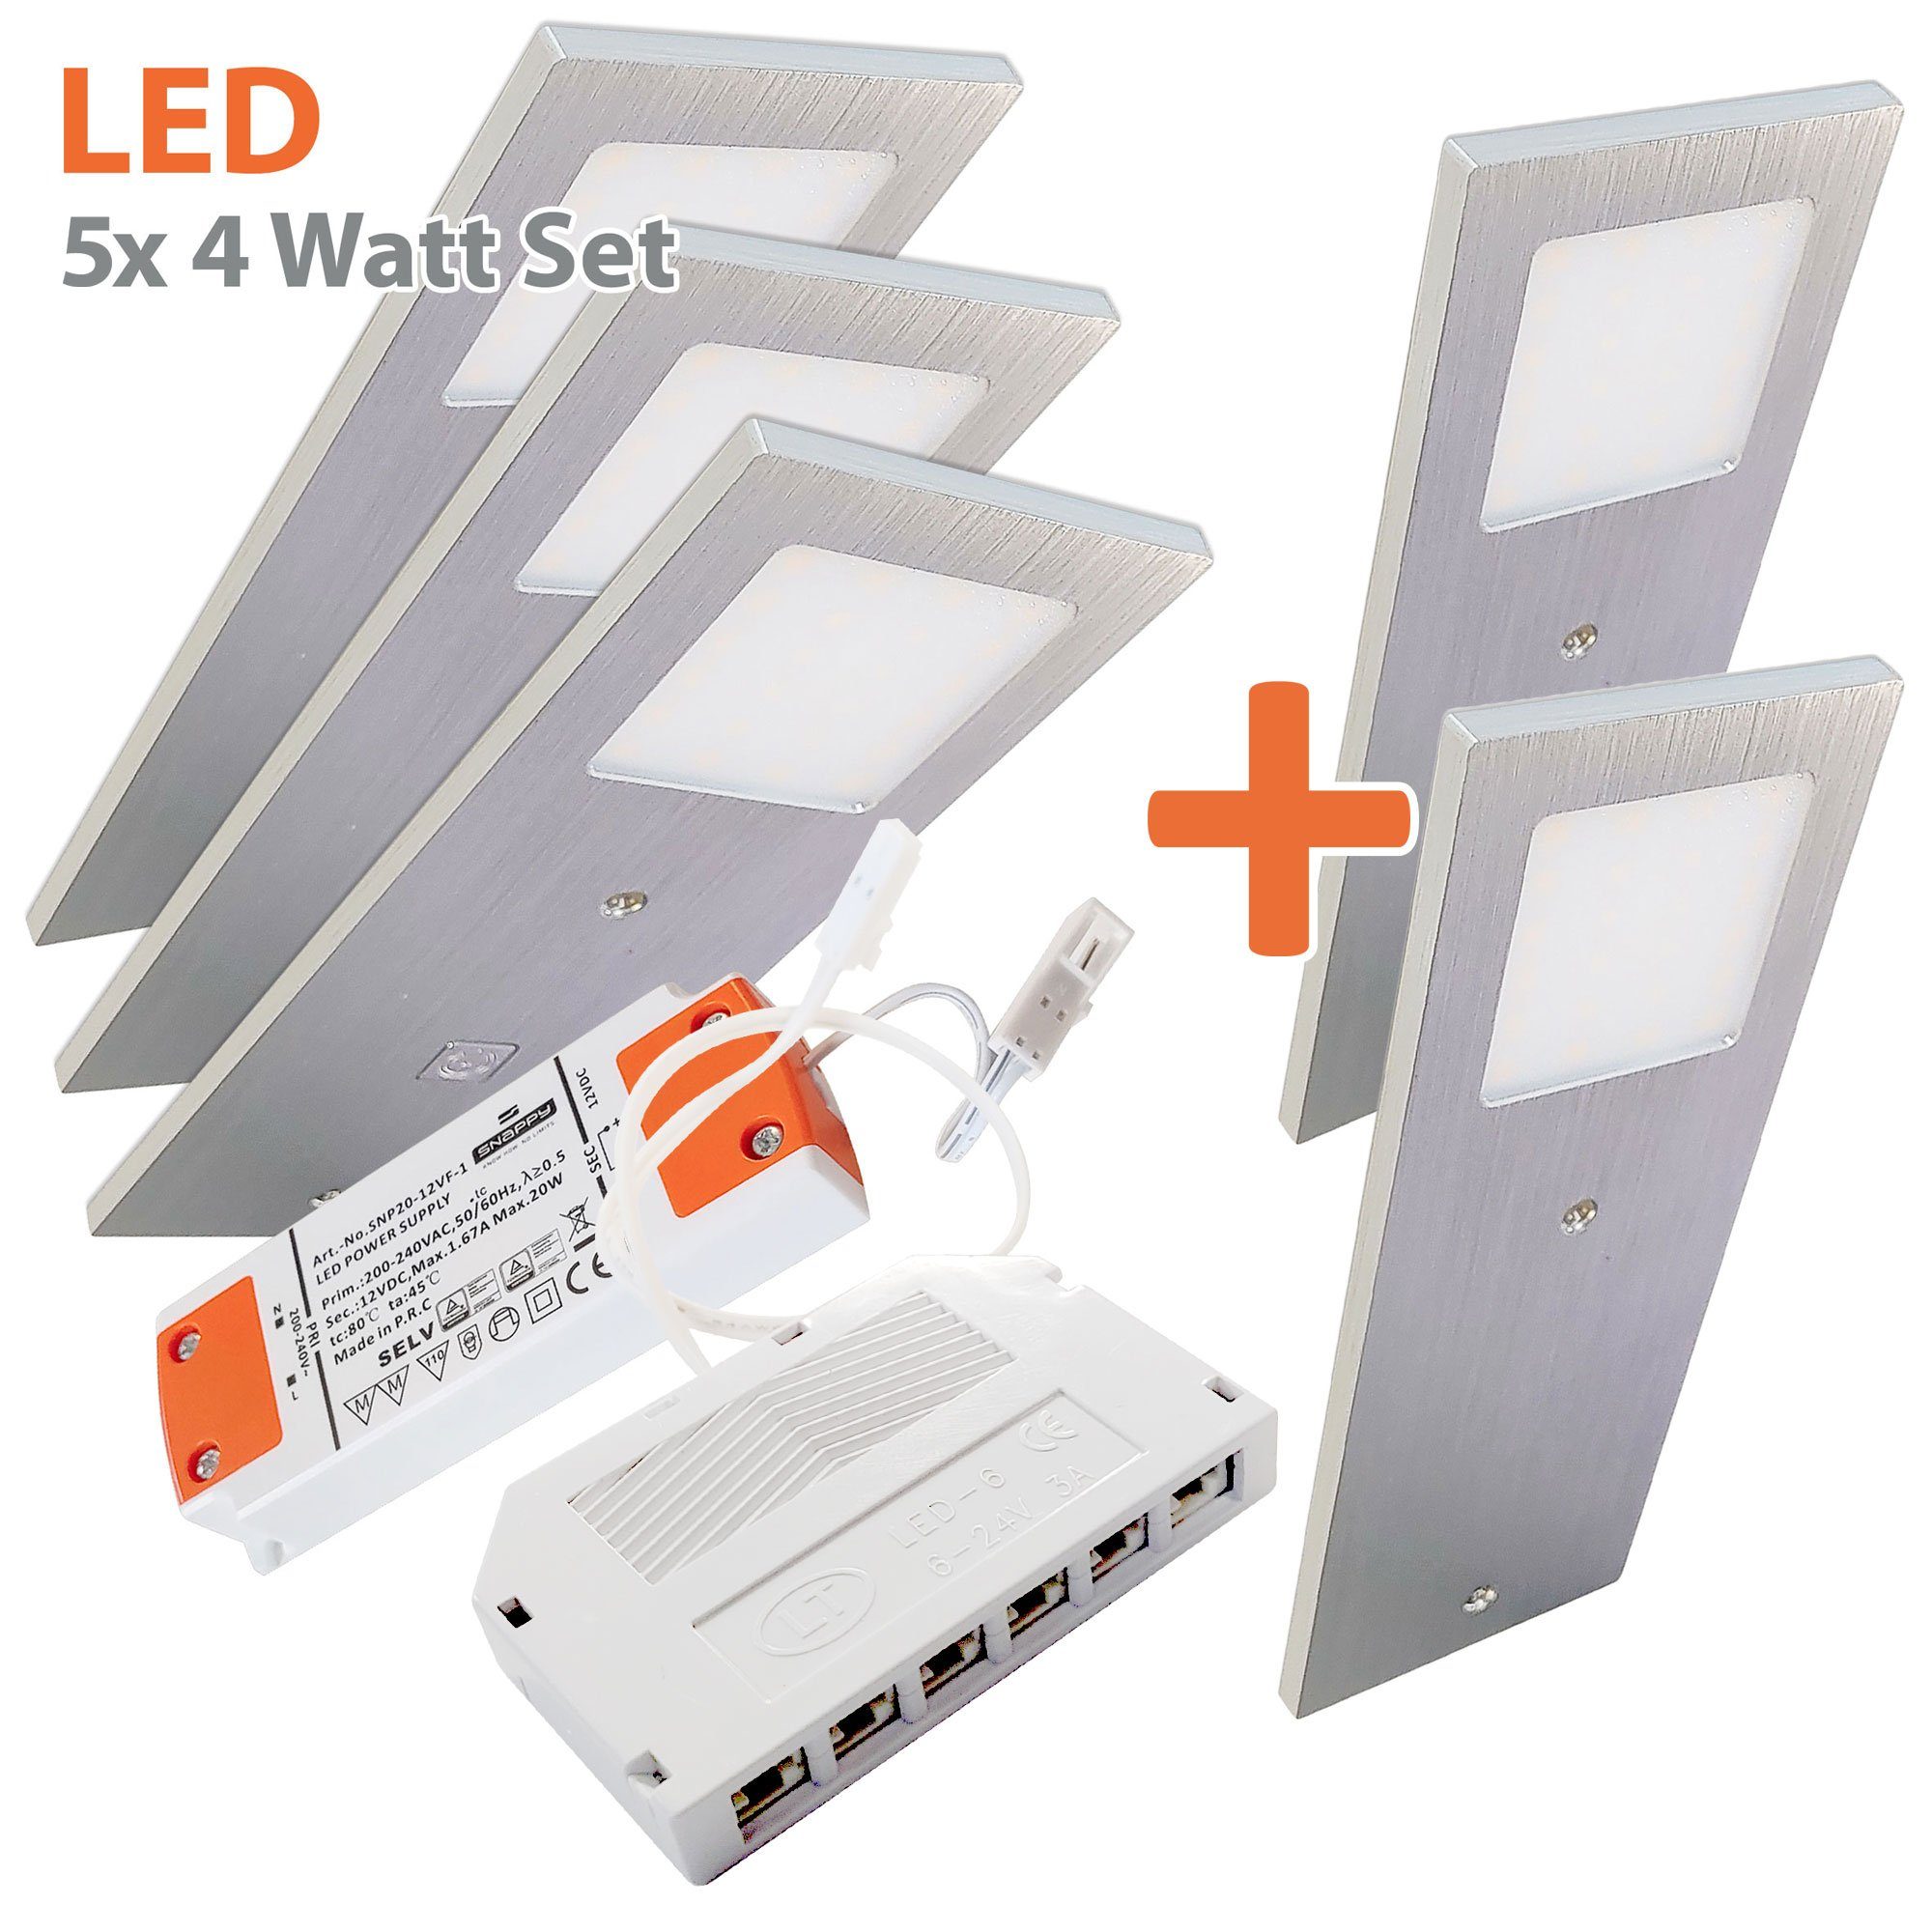 Maxkomfort LED Unterbauleuchte MU-7101A, LED fest integriert, Warmweiß, 3000K, LED, Unterbauleuchte, flach, Küchenleuchte, Touch, Dimmfunktion